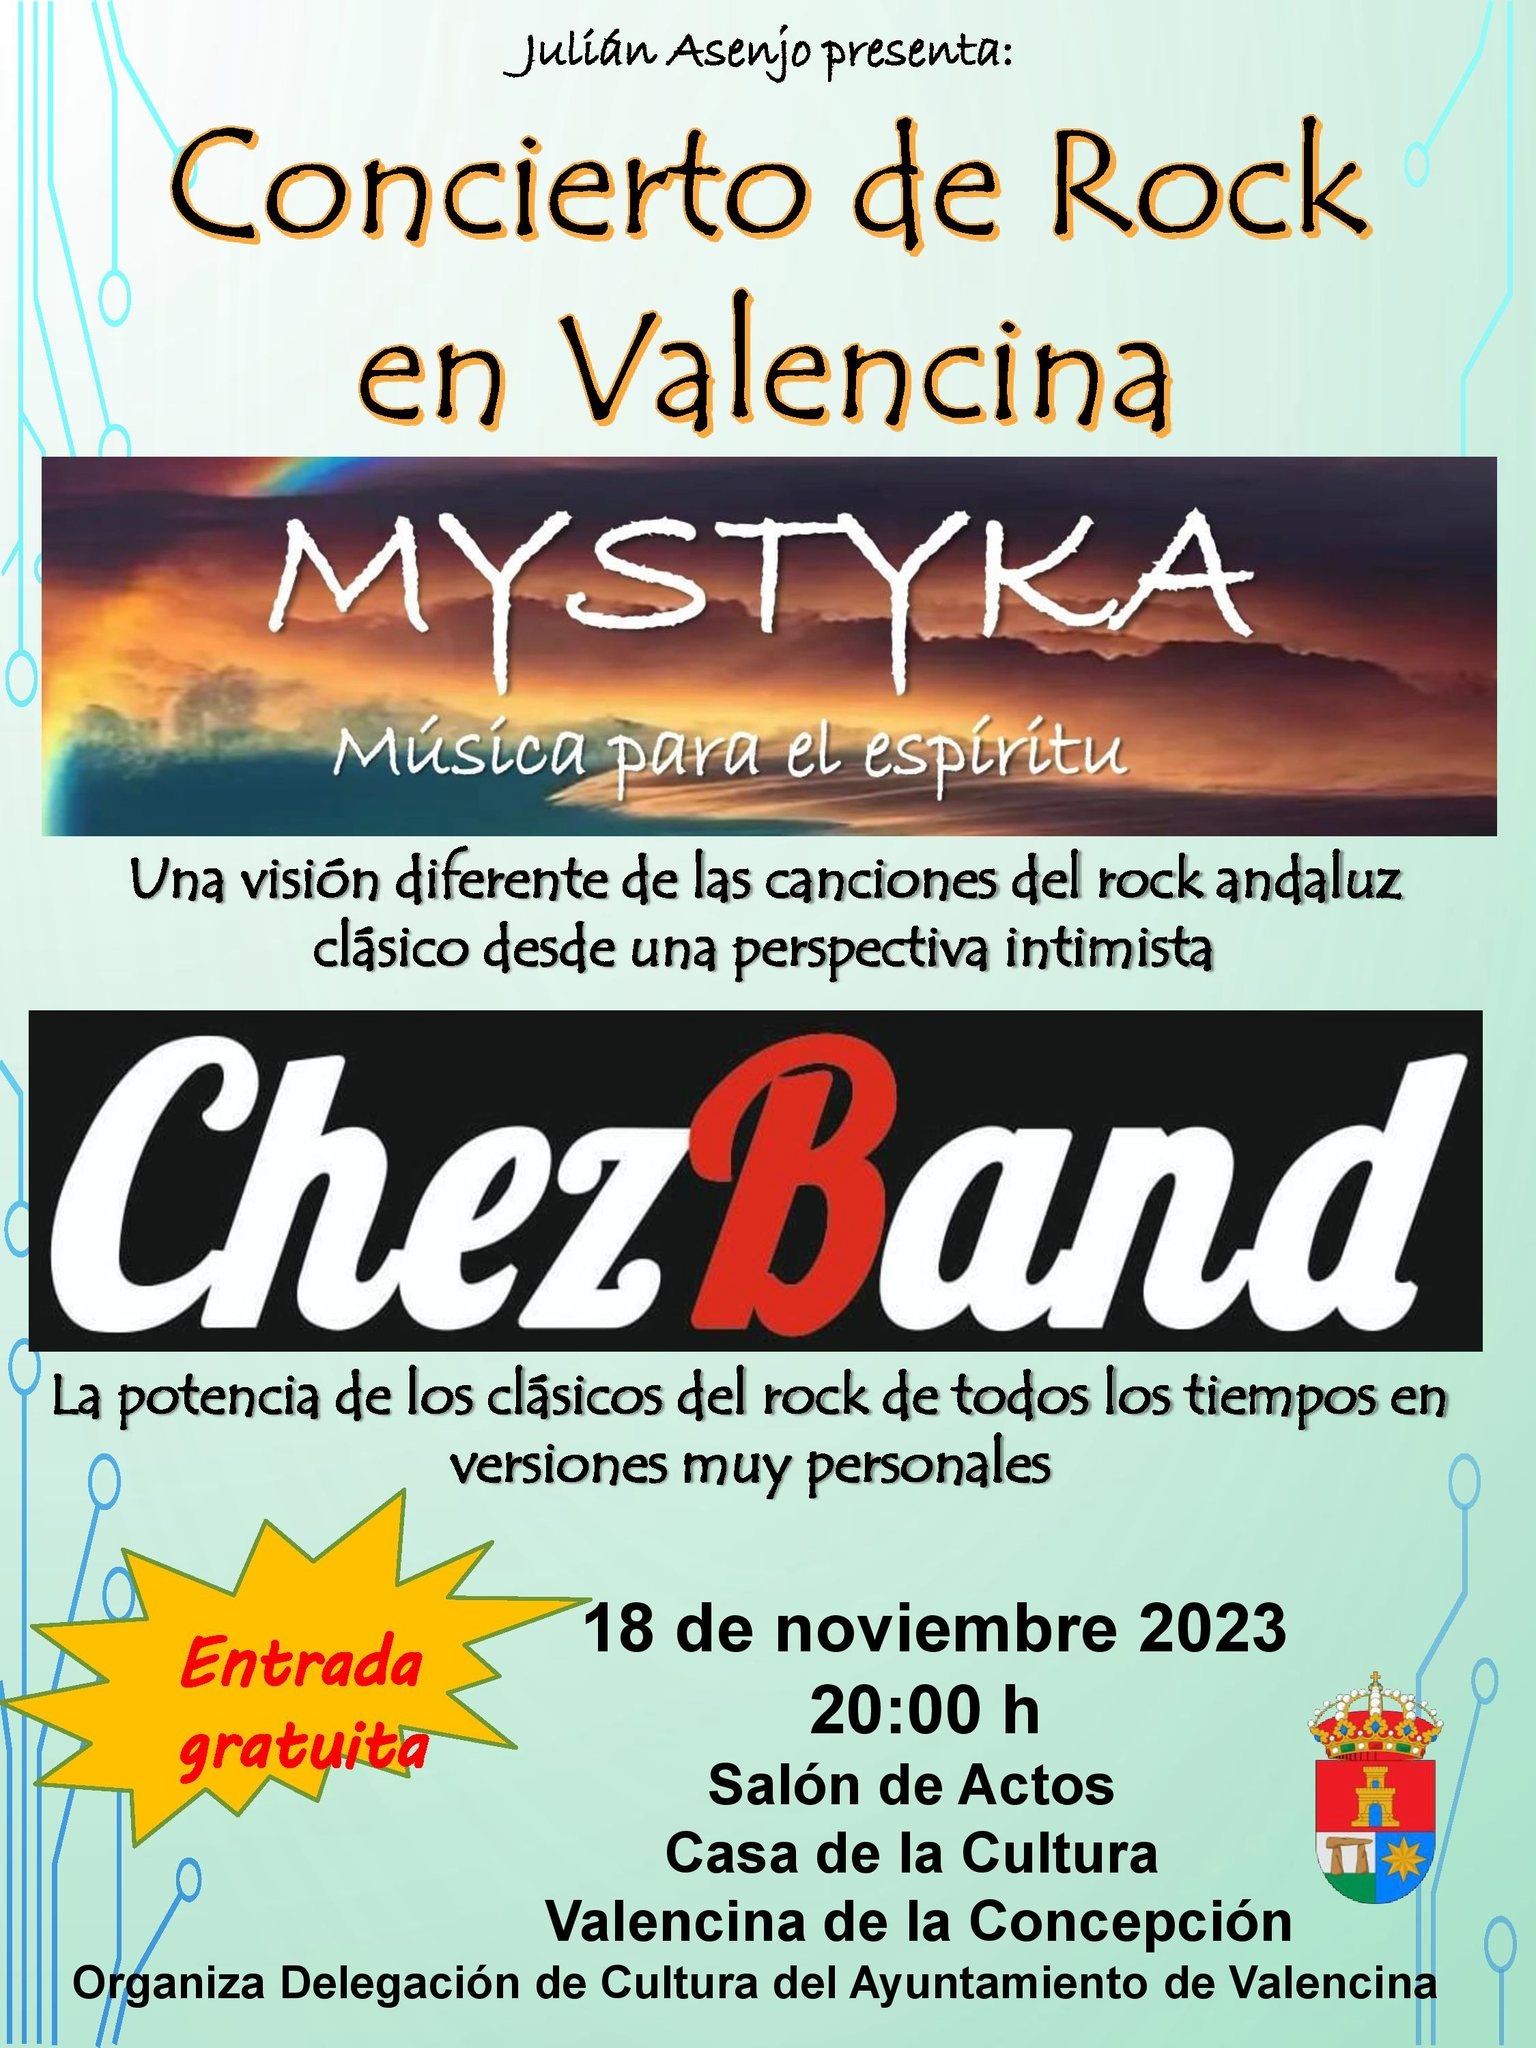 Concierto de Rock 2023 Valencina